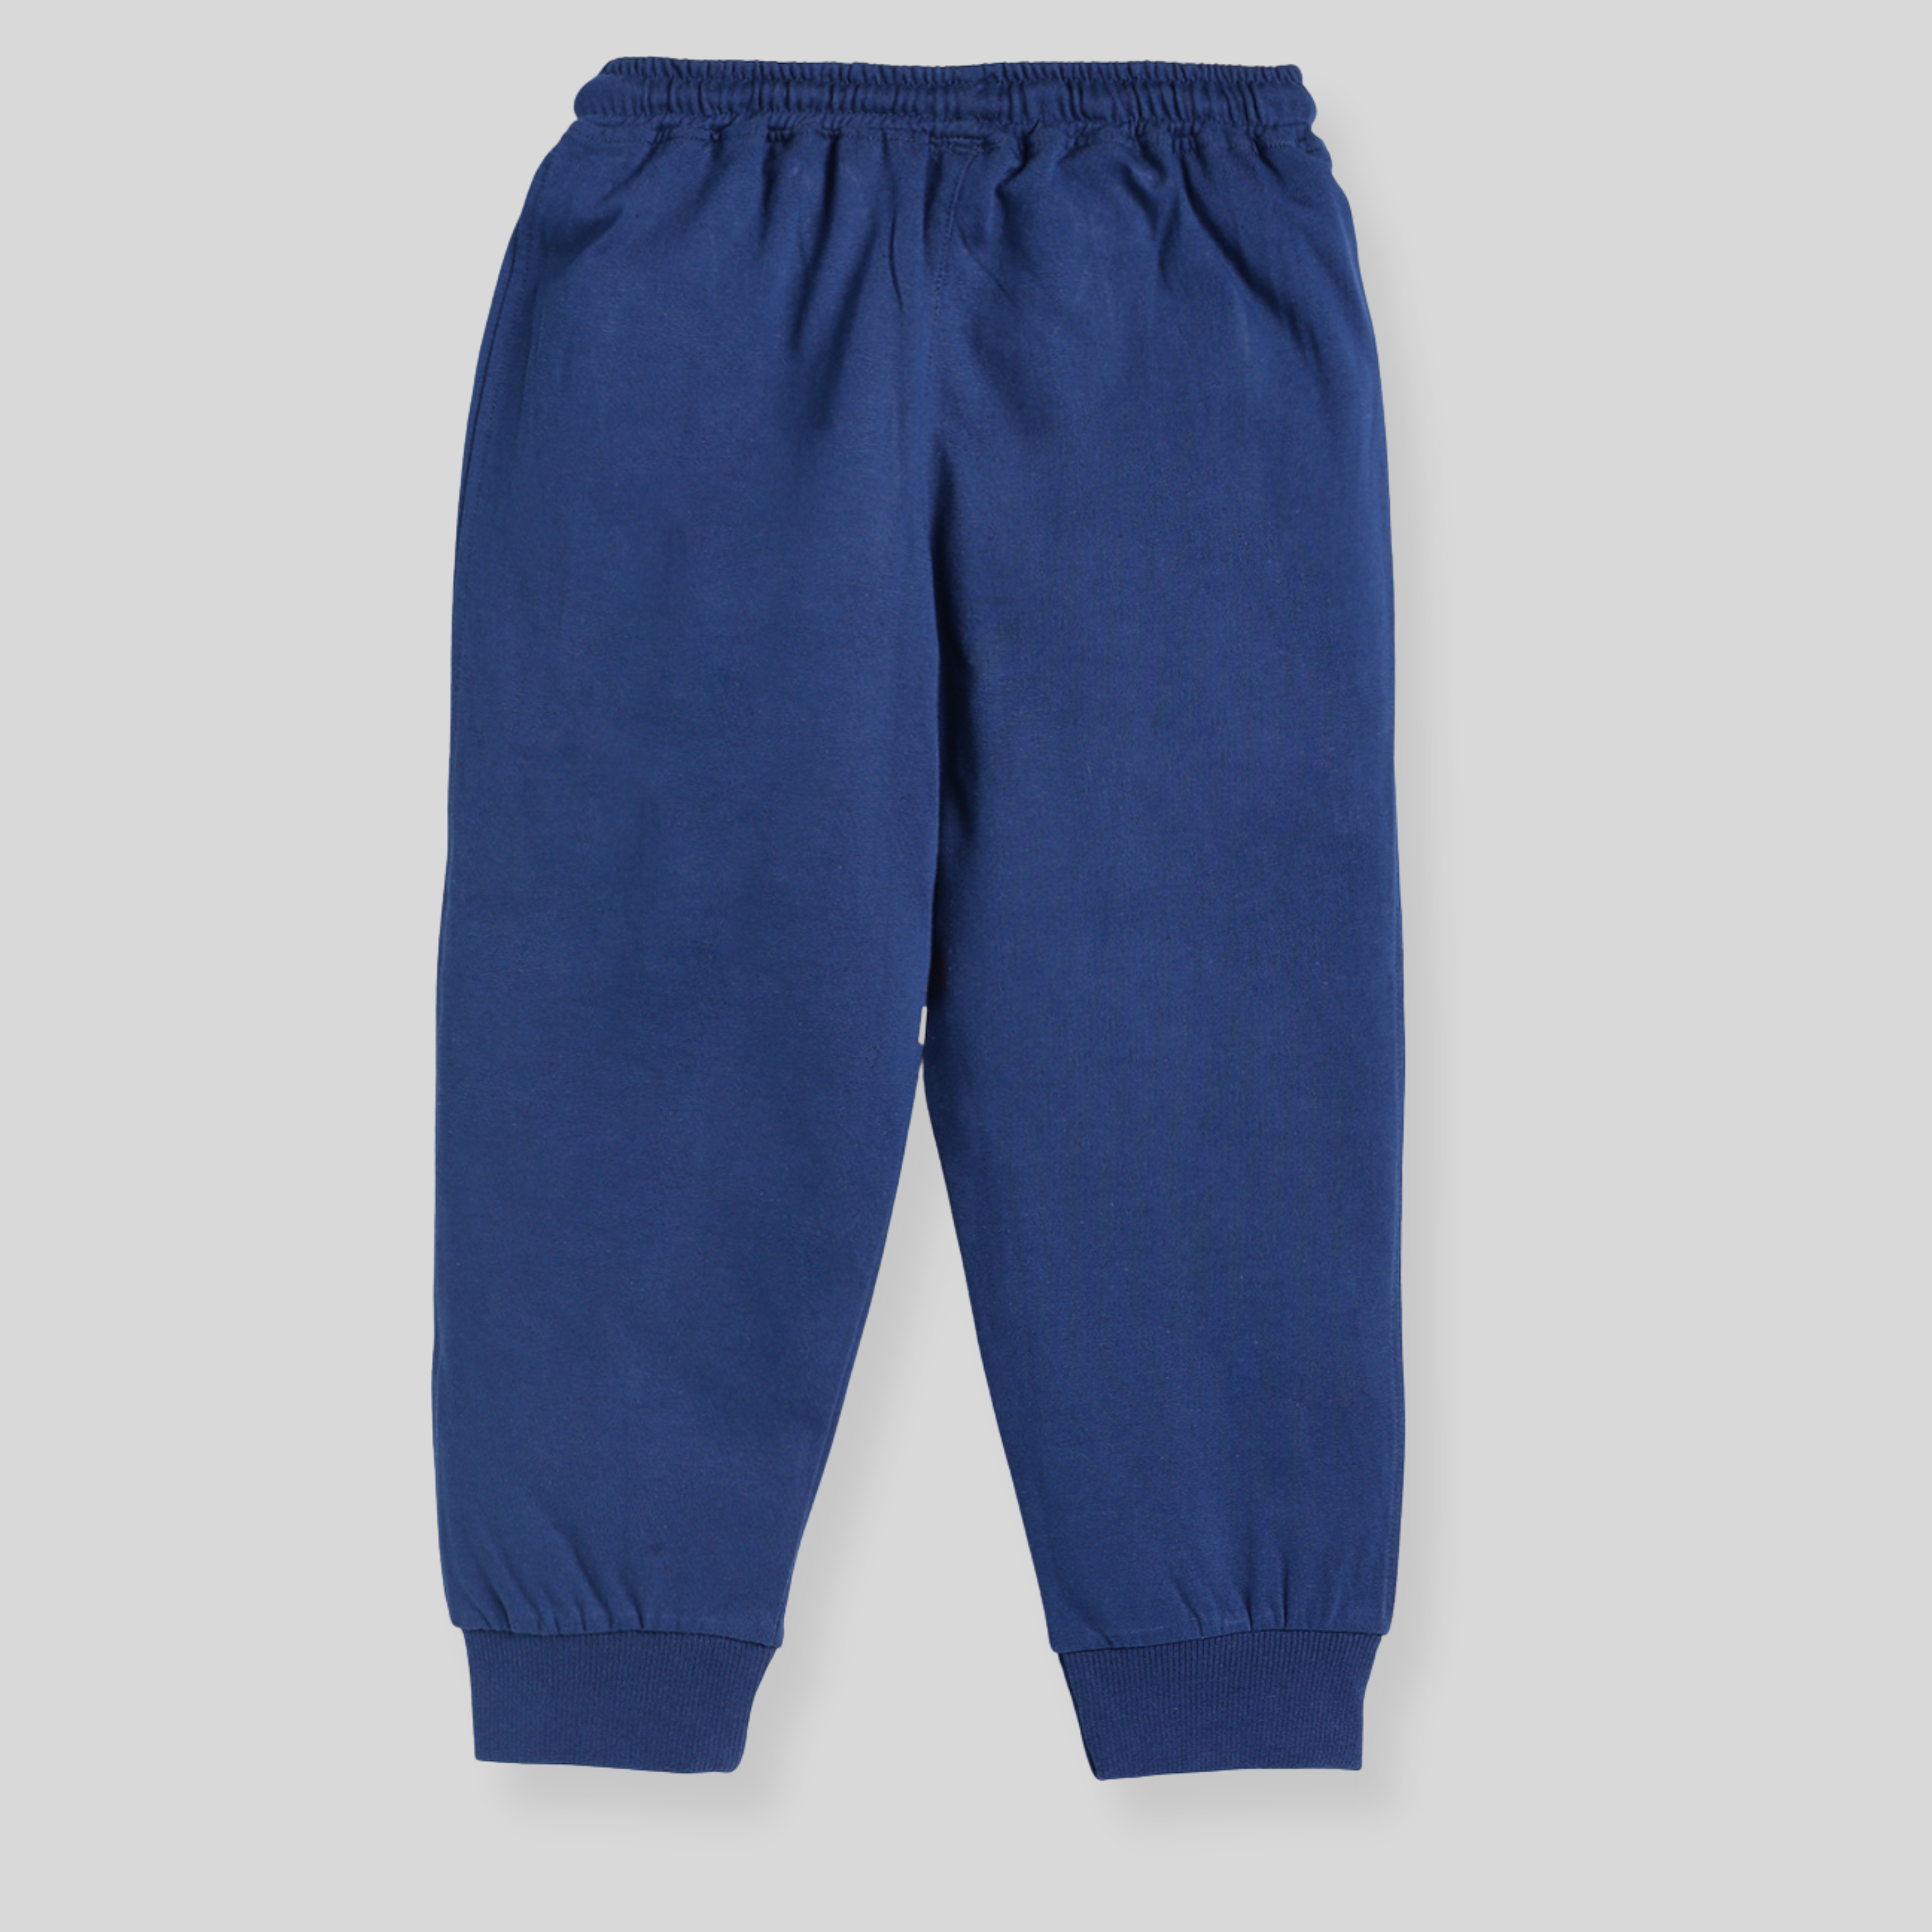 Full length pyjama for boys - Blue